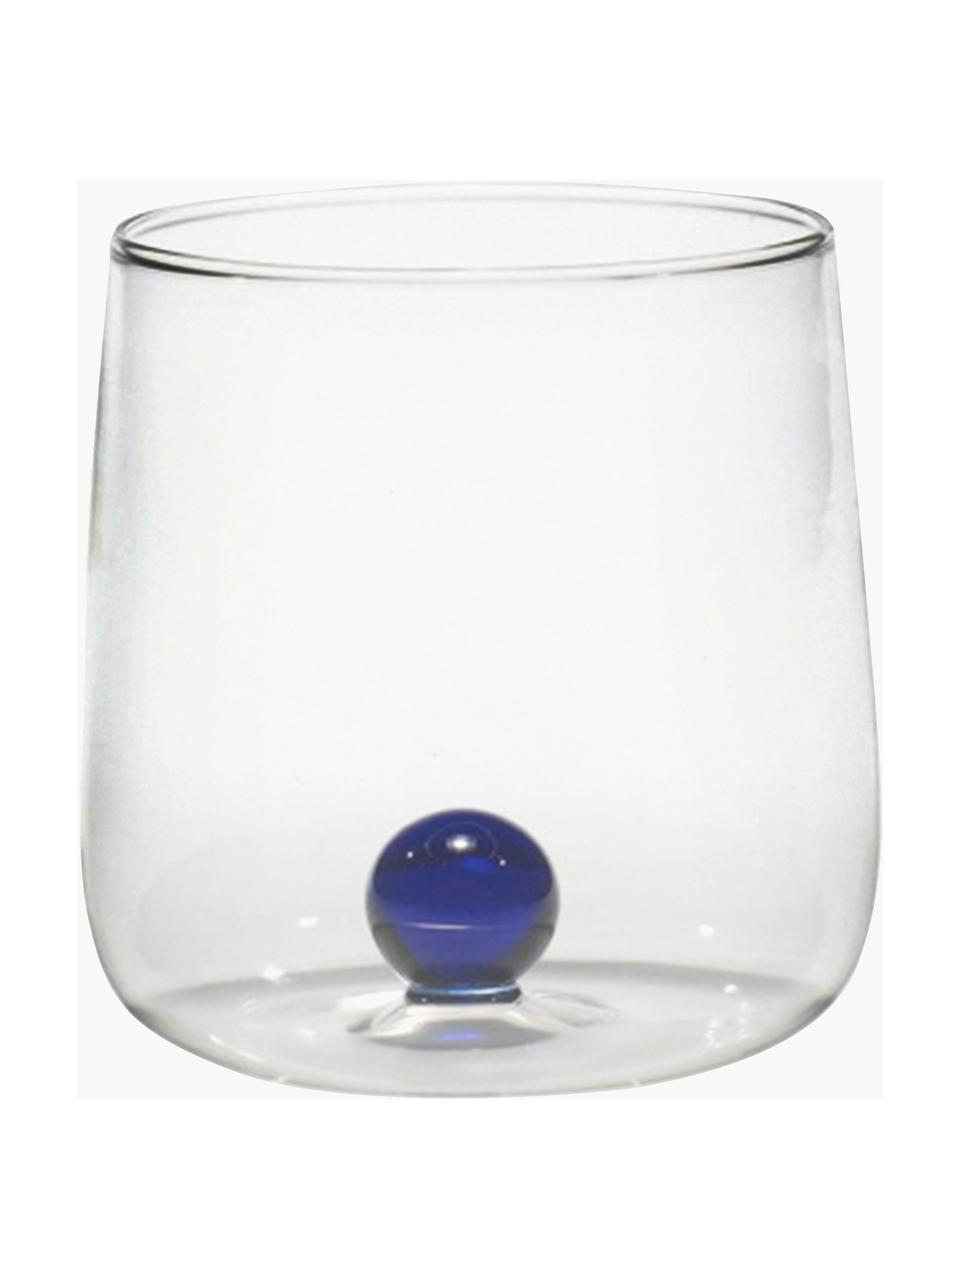 Ručně foukané sklenice z borosilikátového skla Bilia, 6 ks, Borosilikátové sklo, Transparentní, tmavě modrá, Ø 9 cm, V 9 cm, 440 ml